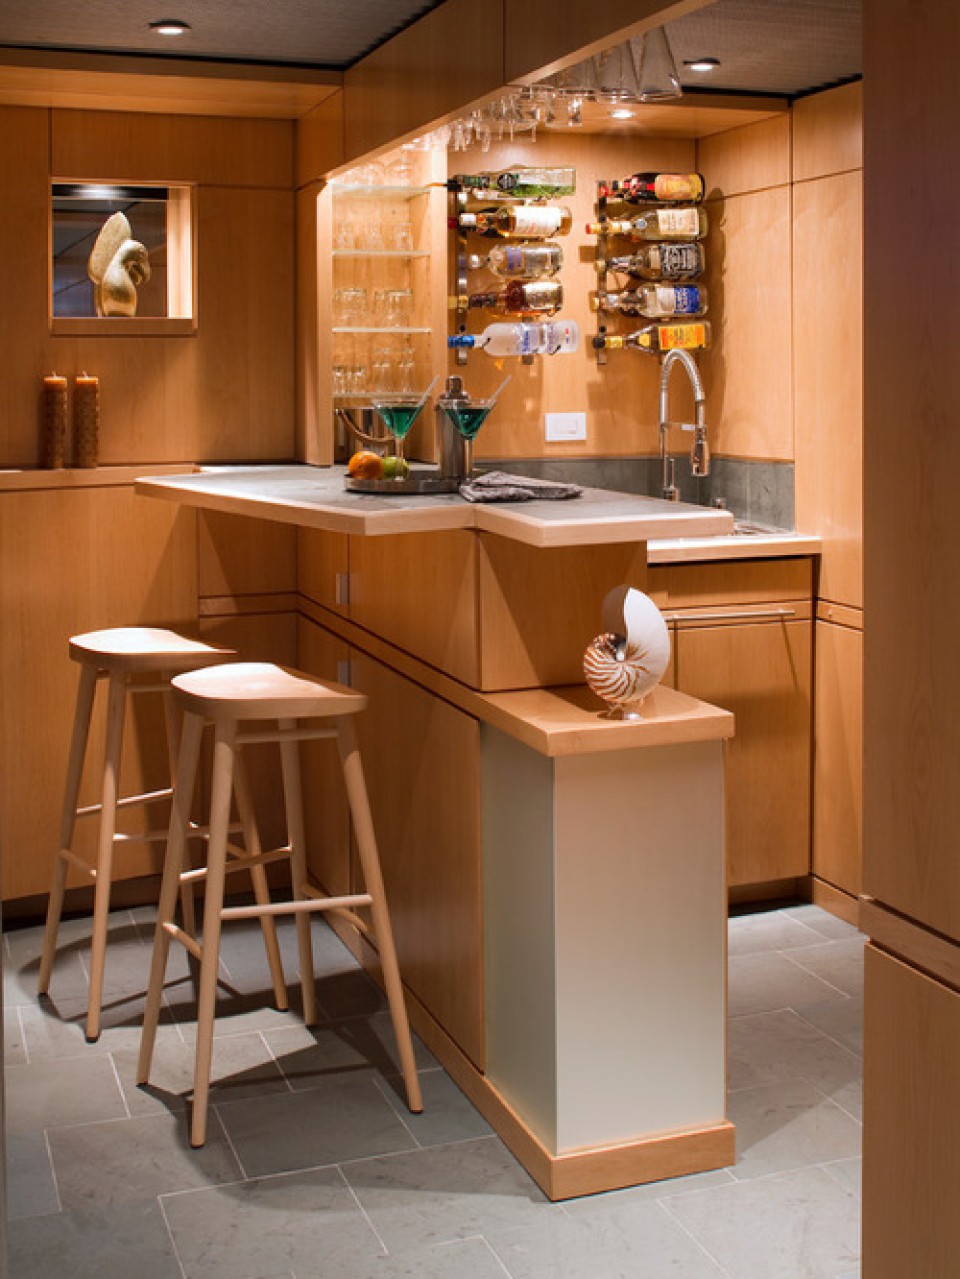 Ide Simple Untuk Mendesain Mini Bar Di Dapur Rumahmu Furnizing